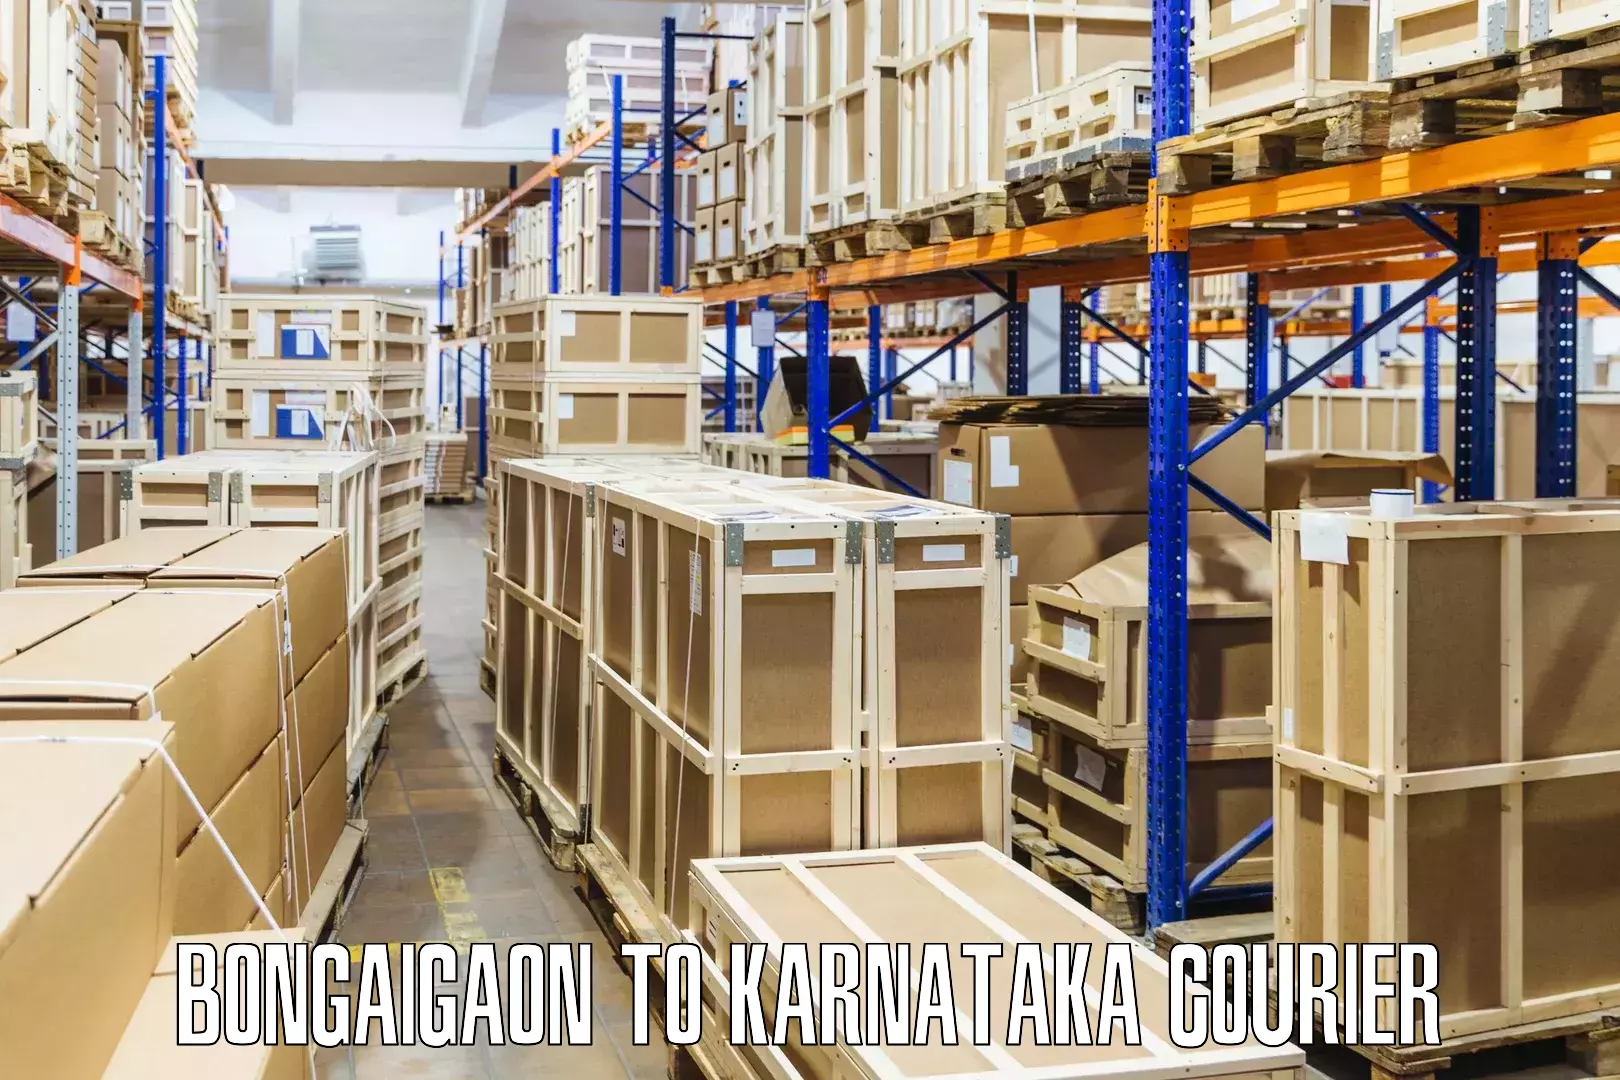 Next-generation courier services Bongaigaon to Hunsur